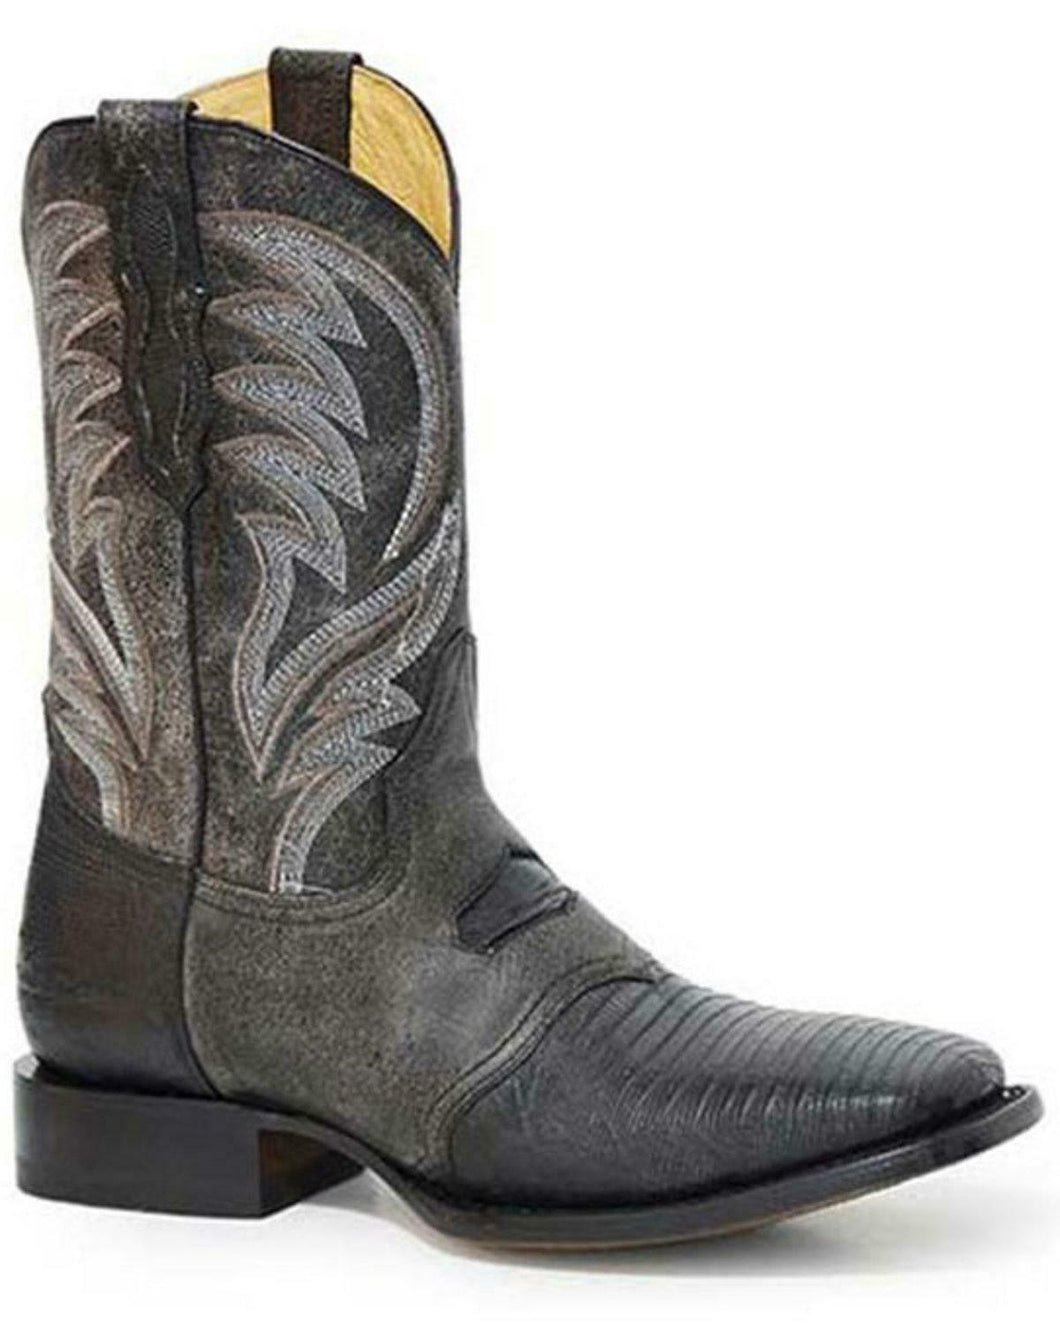 Pard's Western Shop Roper Footwear Black Lizard Boots for Men